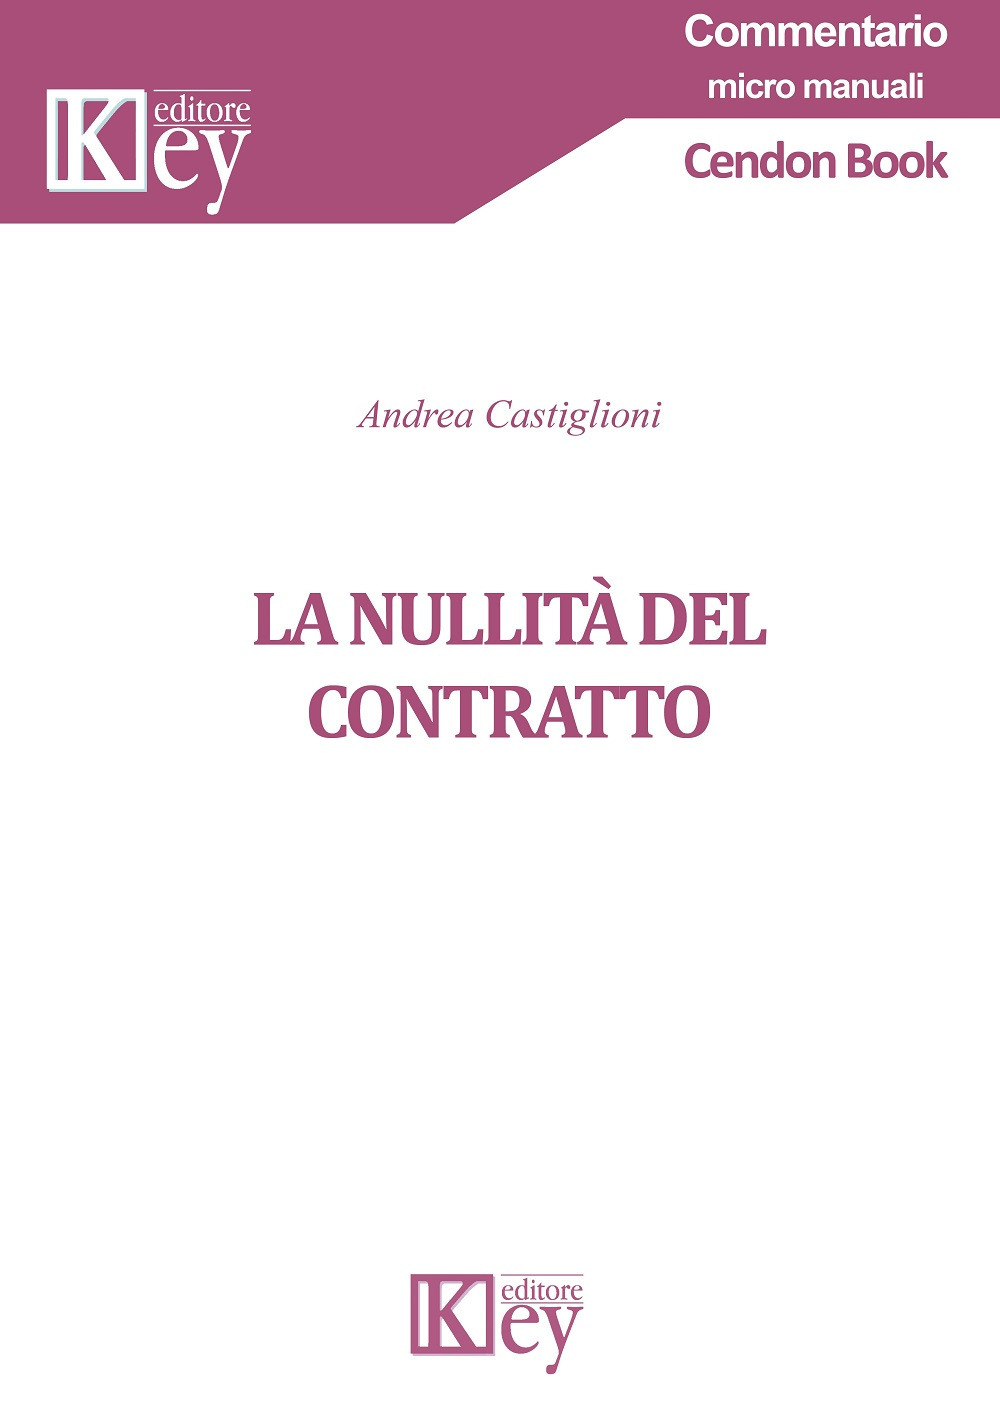 Libri Andrea Castiglioni - La Nullita Del Contratto NUOVO SIGILLATO, EDIZIONE DEL 28/11/2019 SUBITO DISPONIBILE